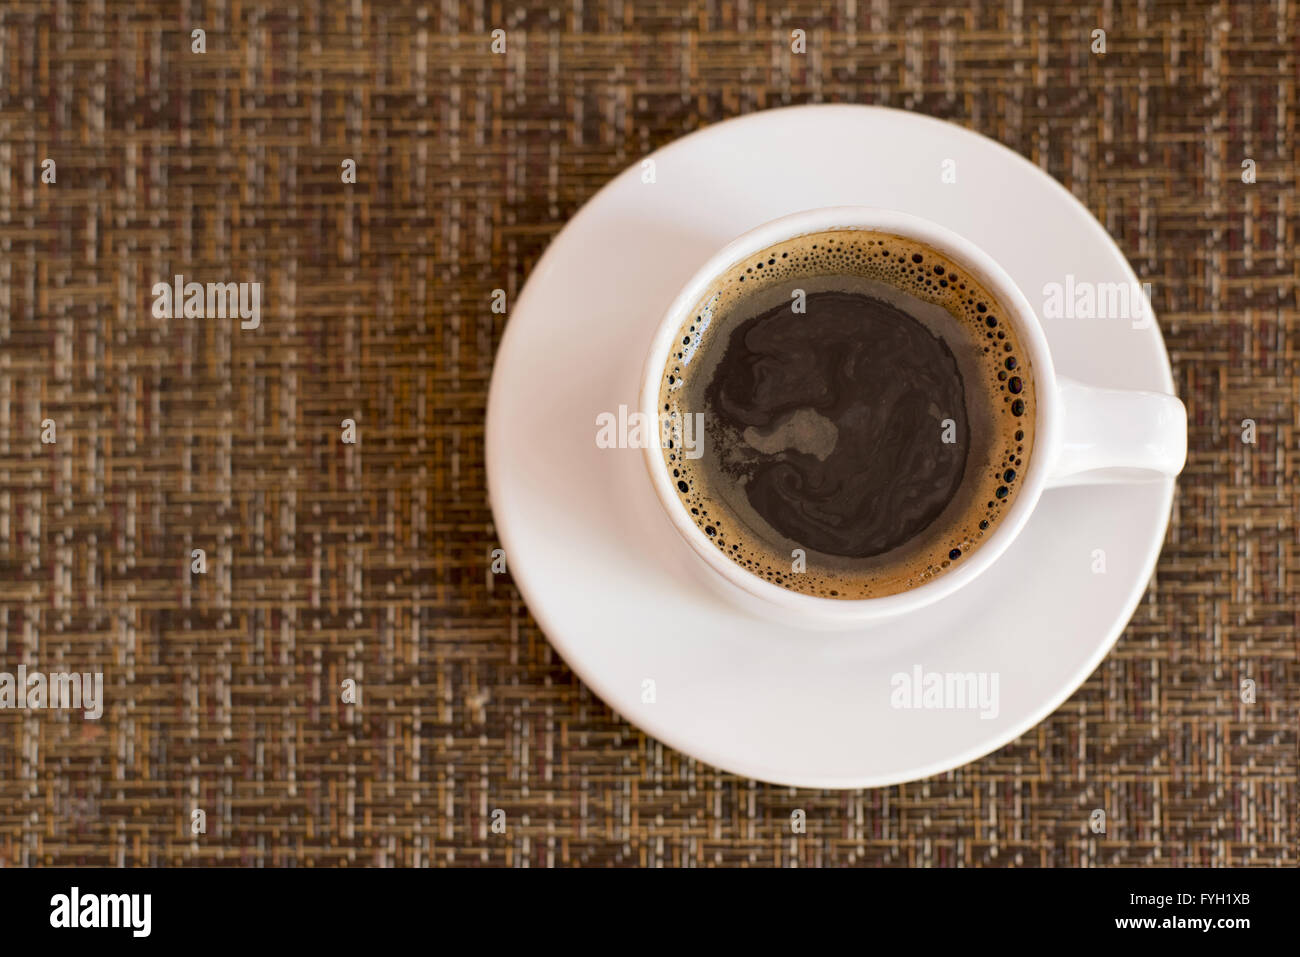 Draufsicht der dunklen Kaffee in weiße Becher und Teller auf Tabellenhintergrund Wicker Textur. Stockfoto